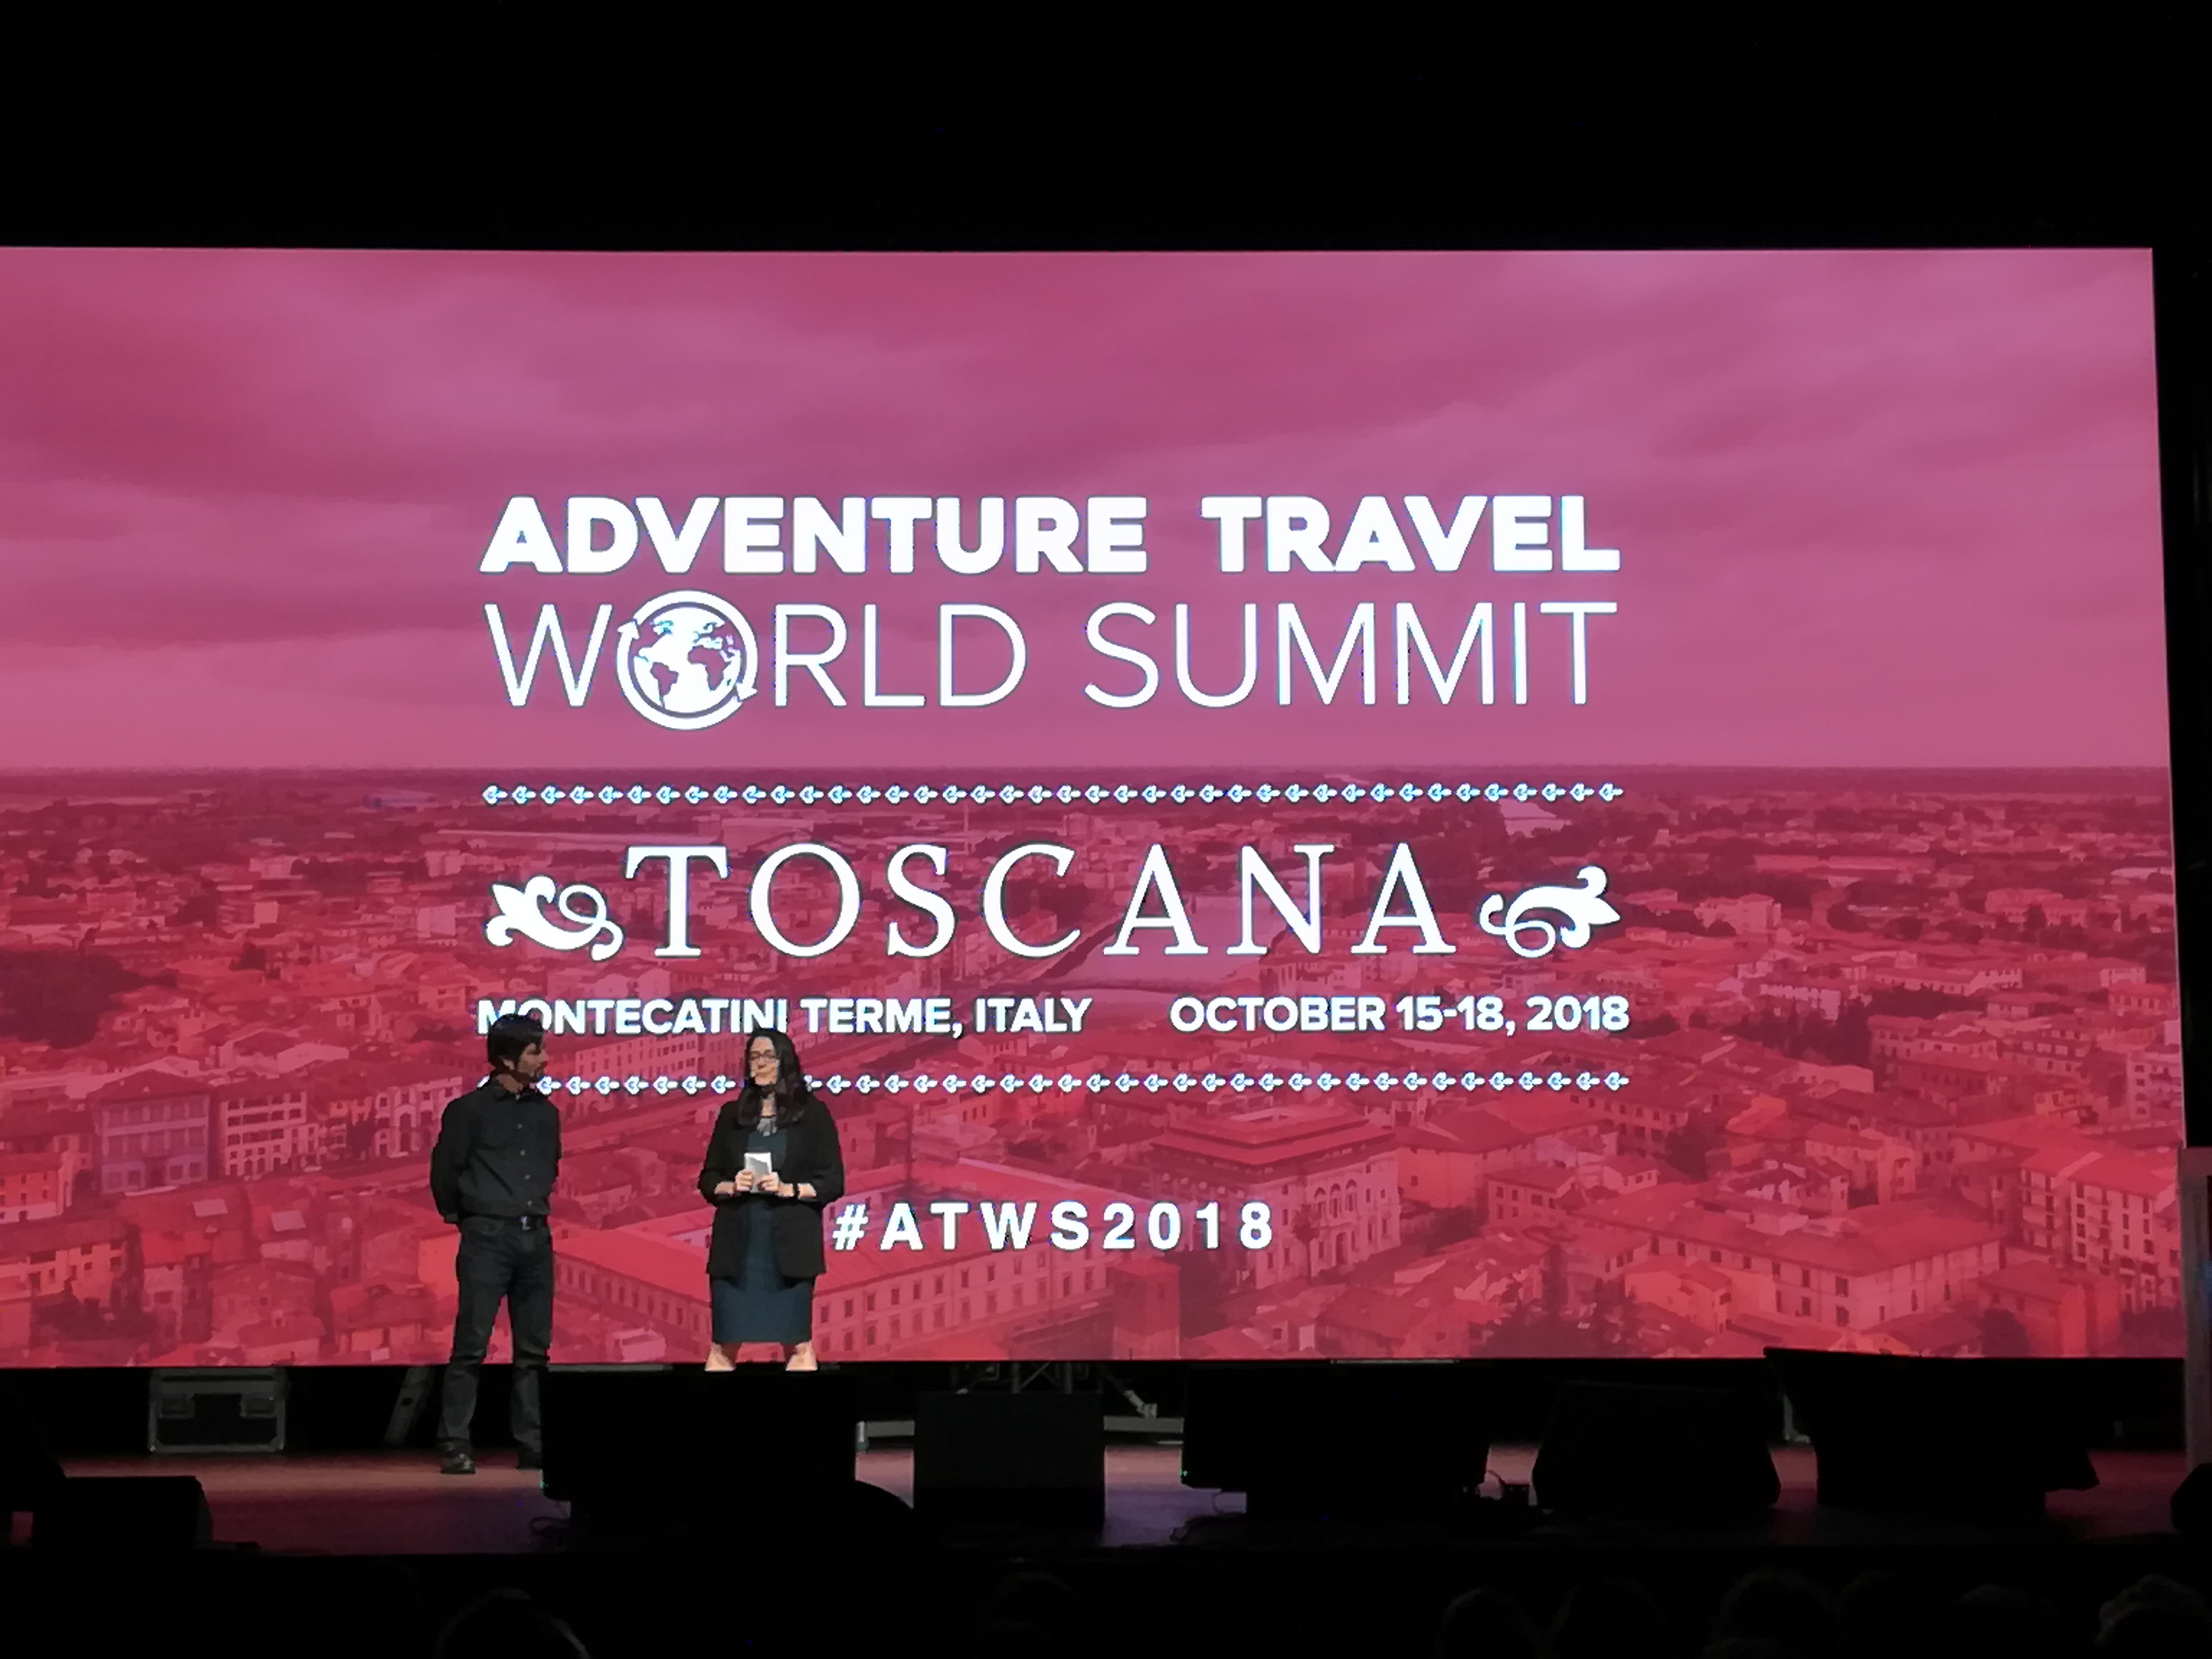 Un momento della cerimonia inaugurale dell'ATWS2018 a Montecatini Terme